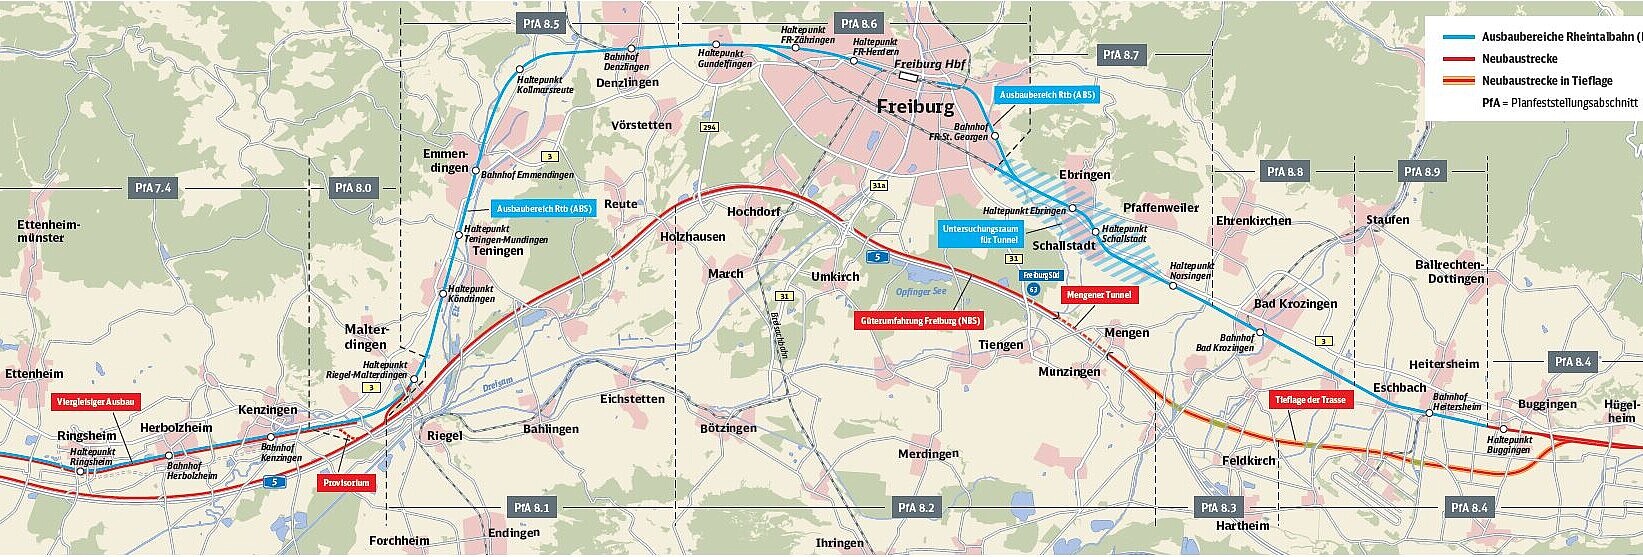 Karte zeigt Abschnitte 8 des Rheintalbahnausbaus